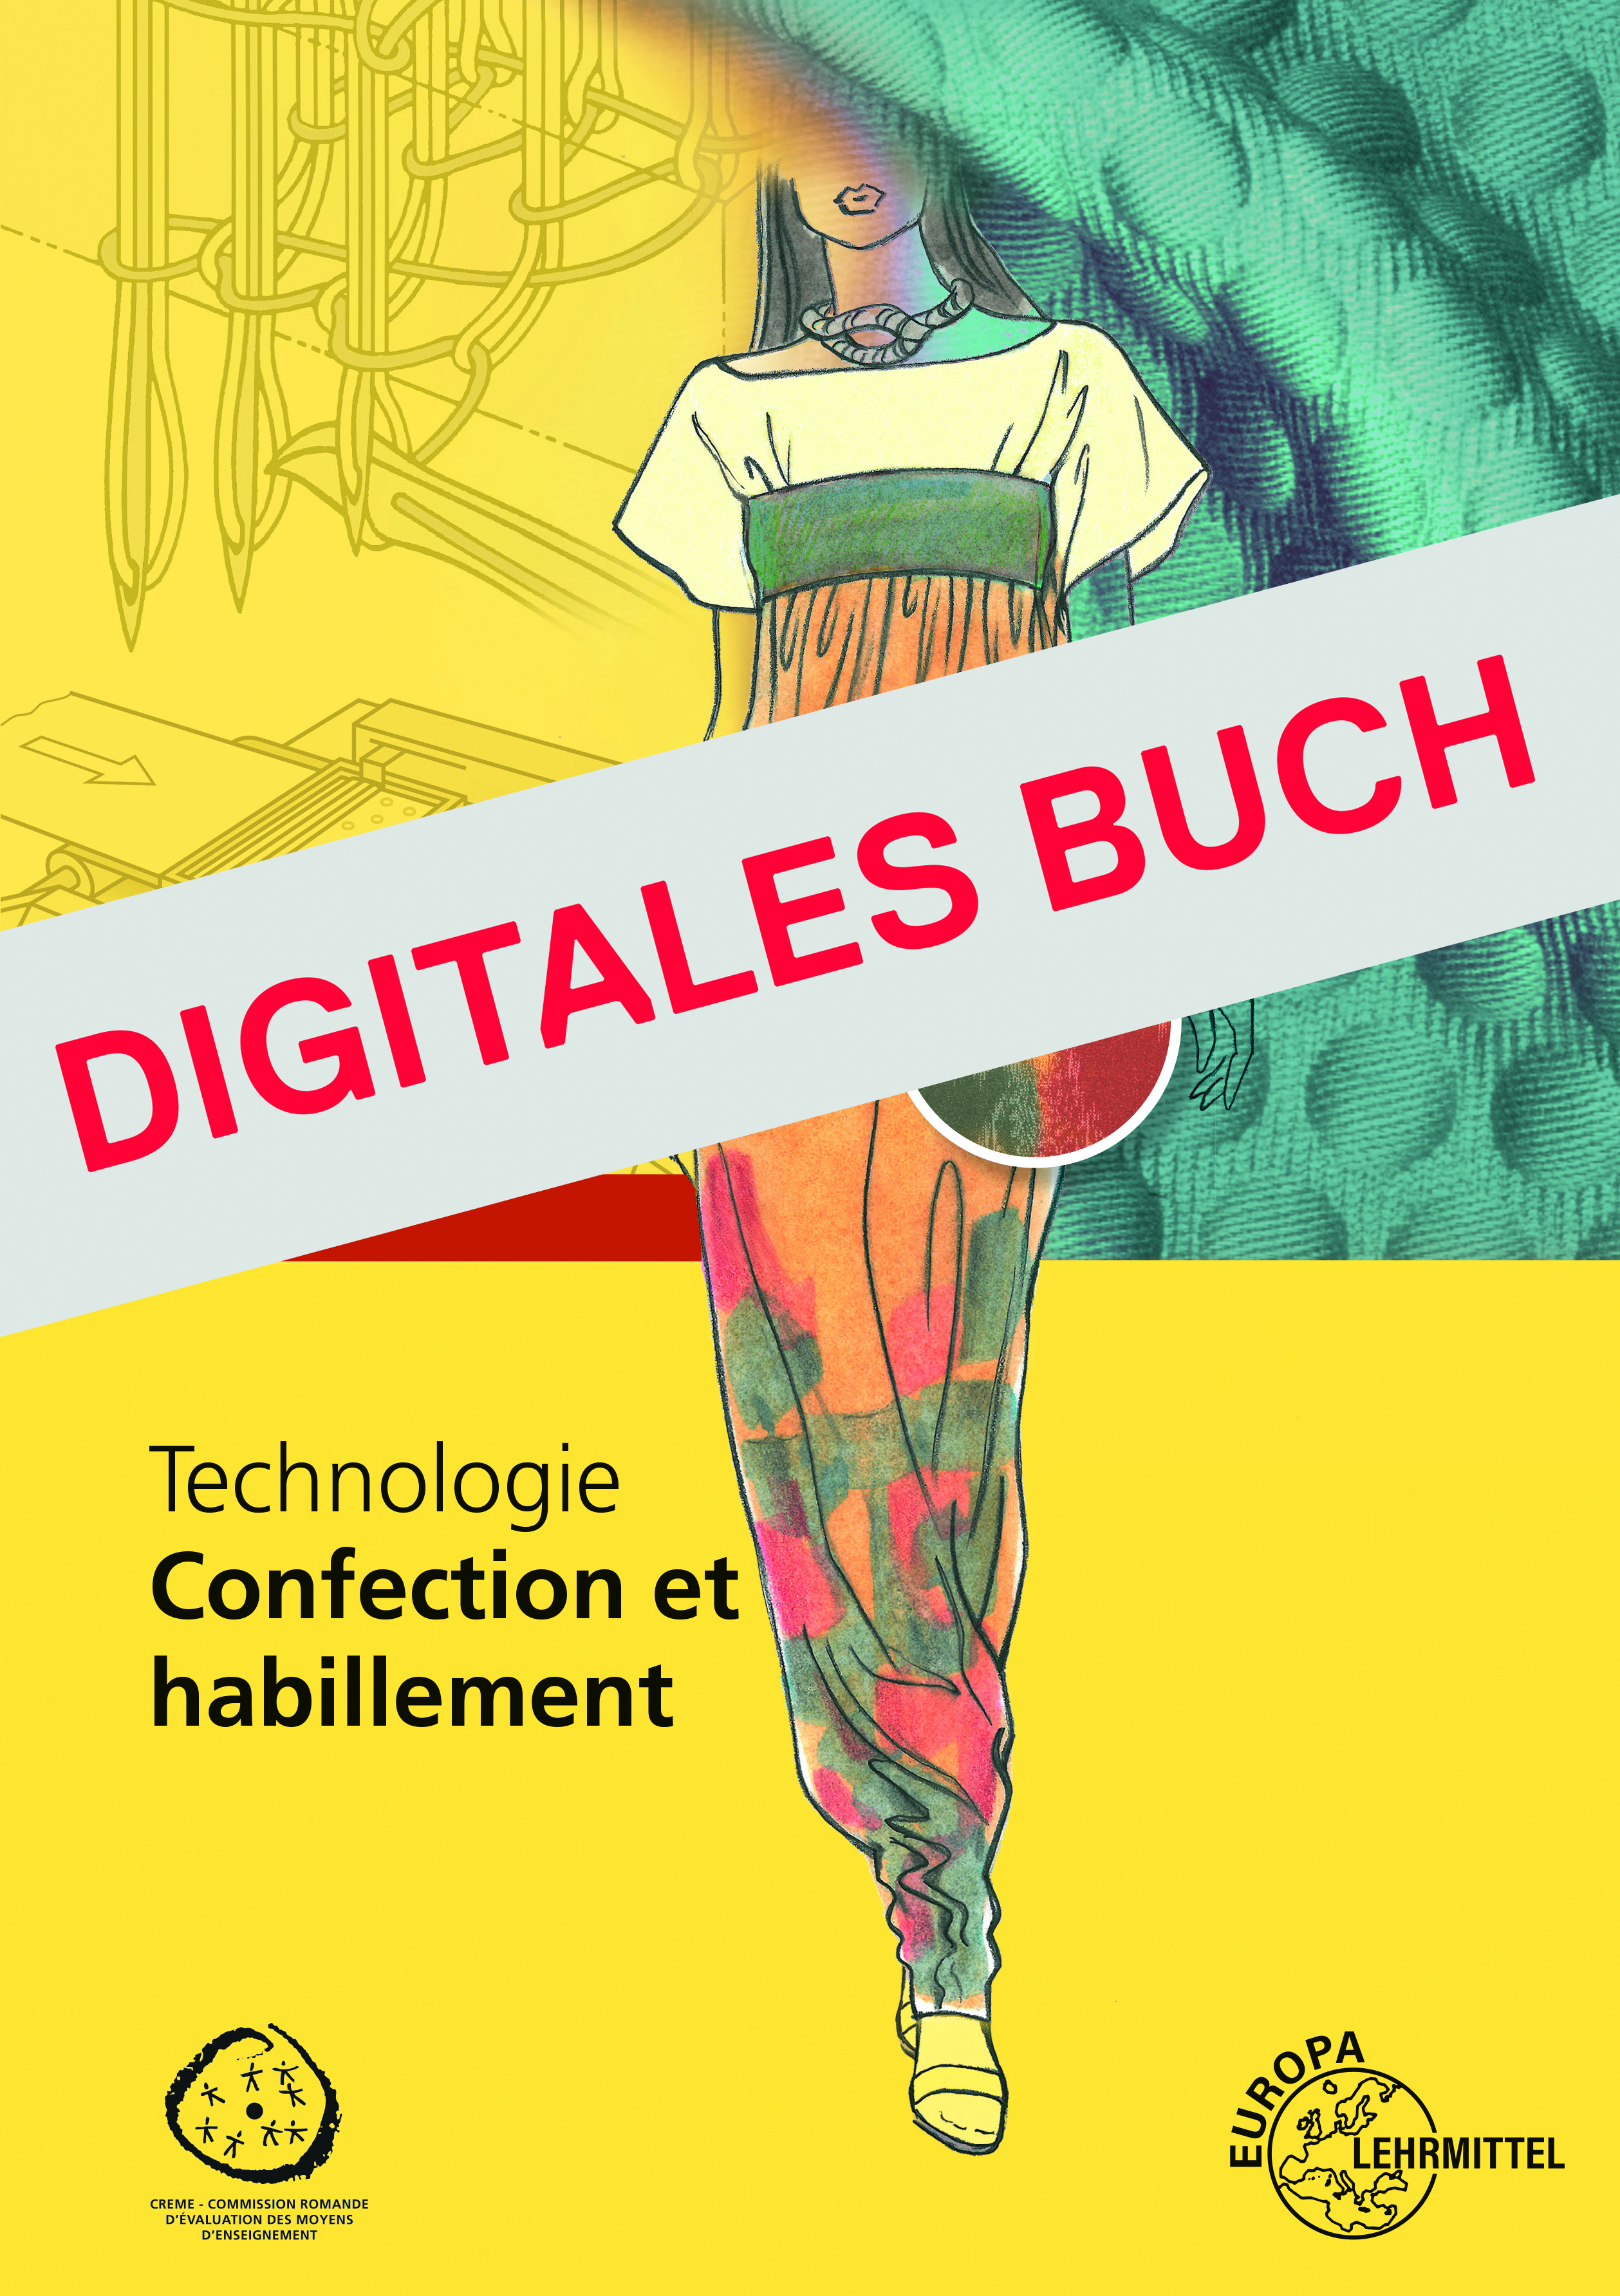 Technologie confection et habillement - Digitales Buch